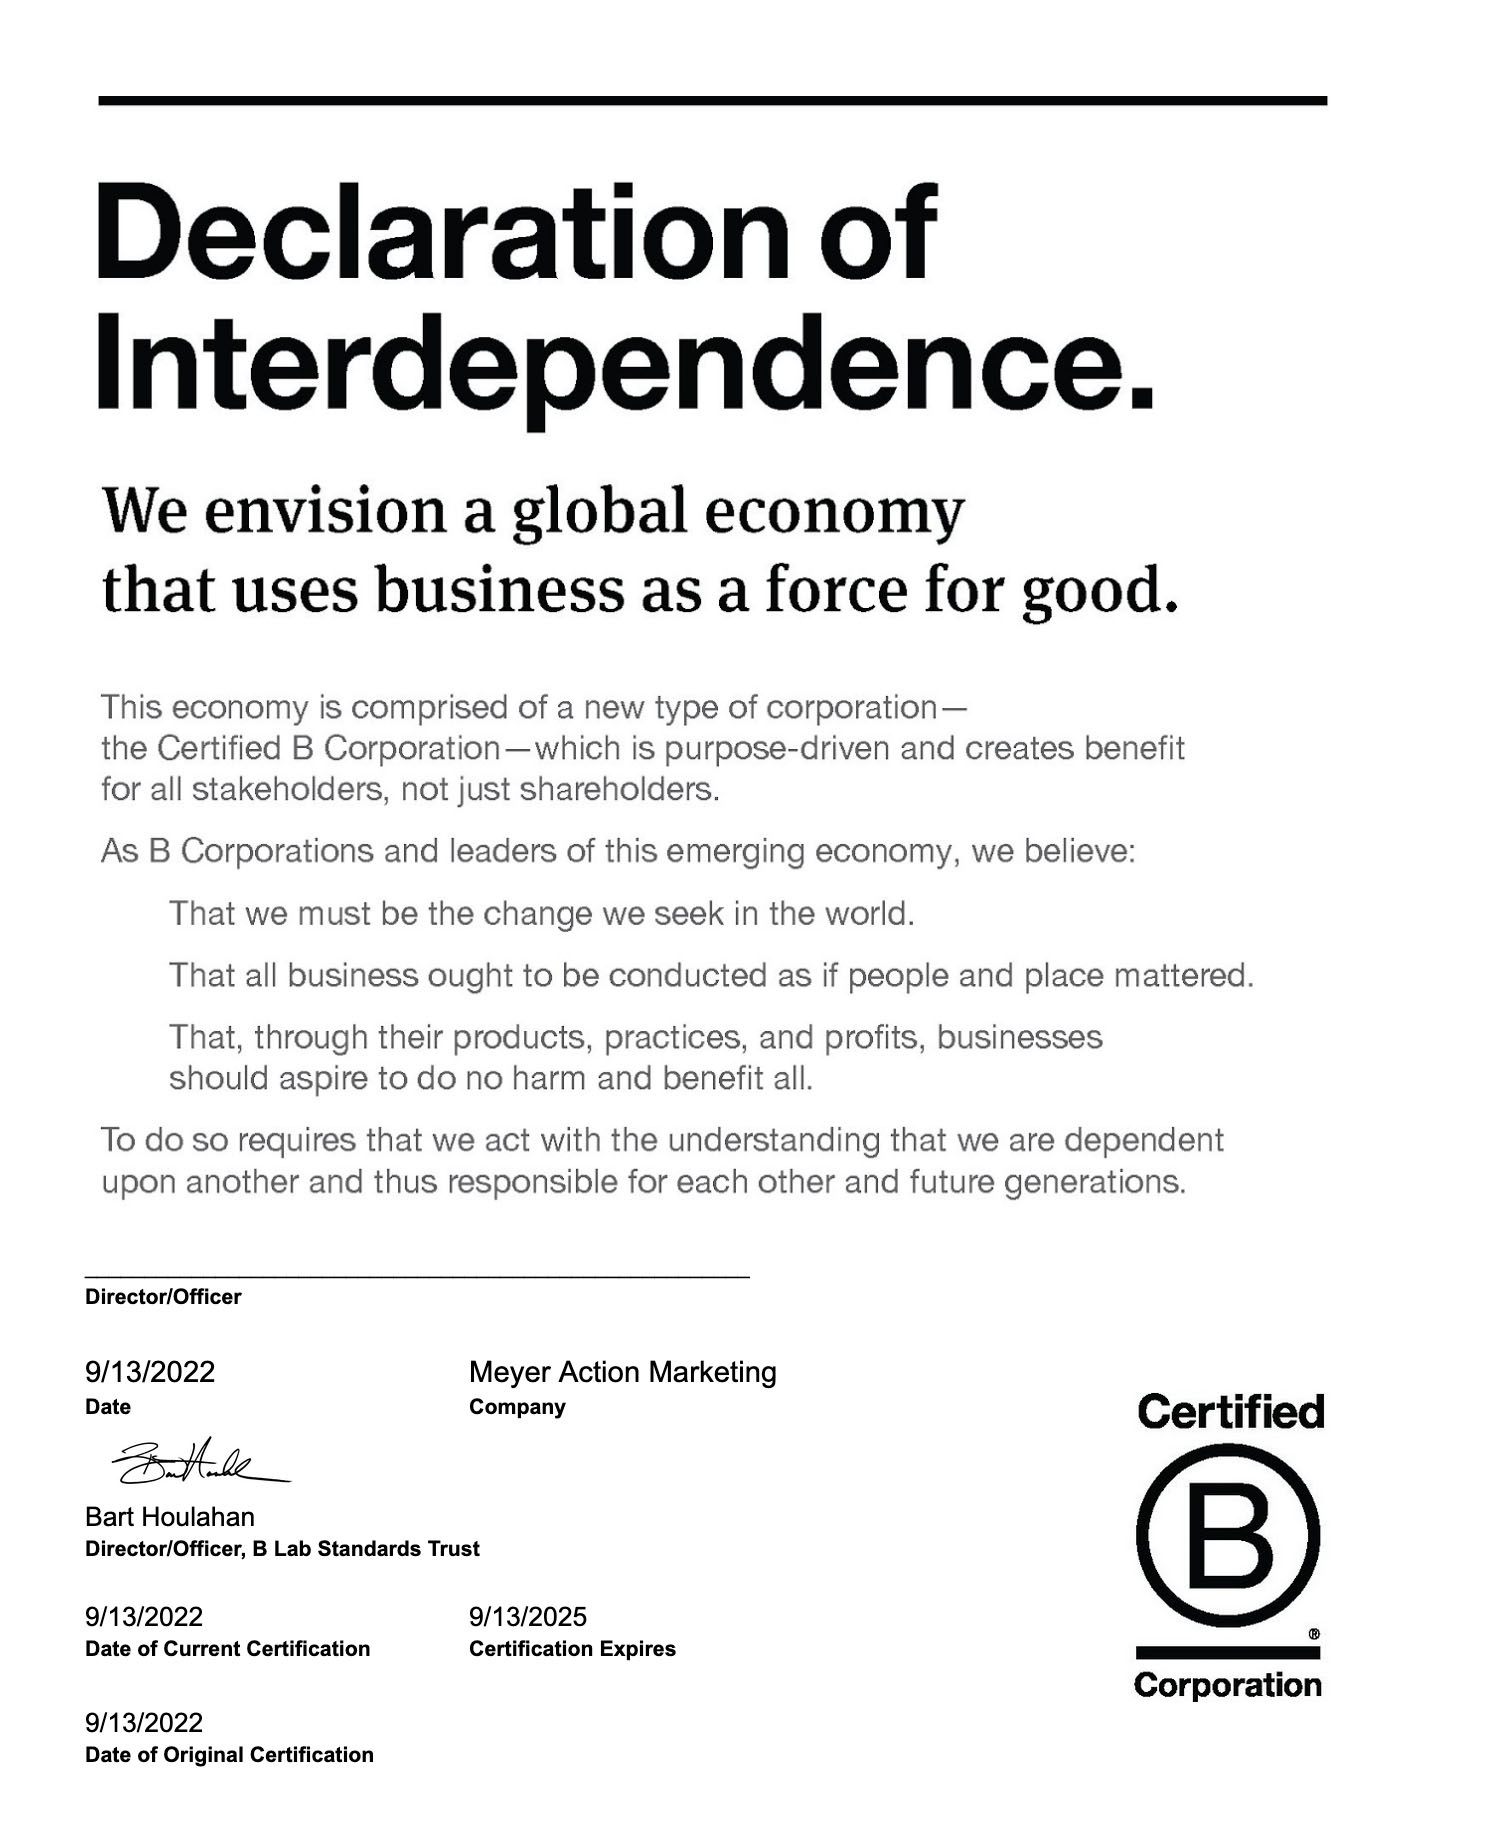 Declaration of Interdependence para Meyer, empresa Certificada B, para un triple impacto económico